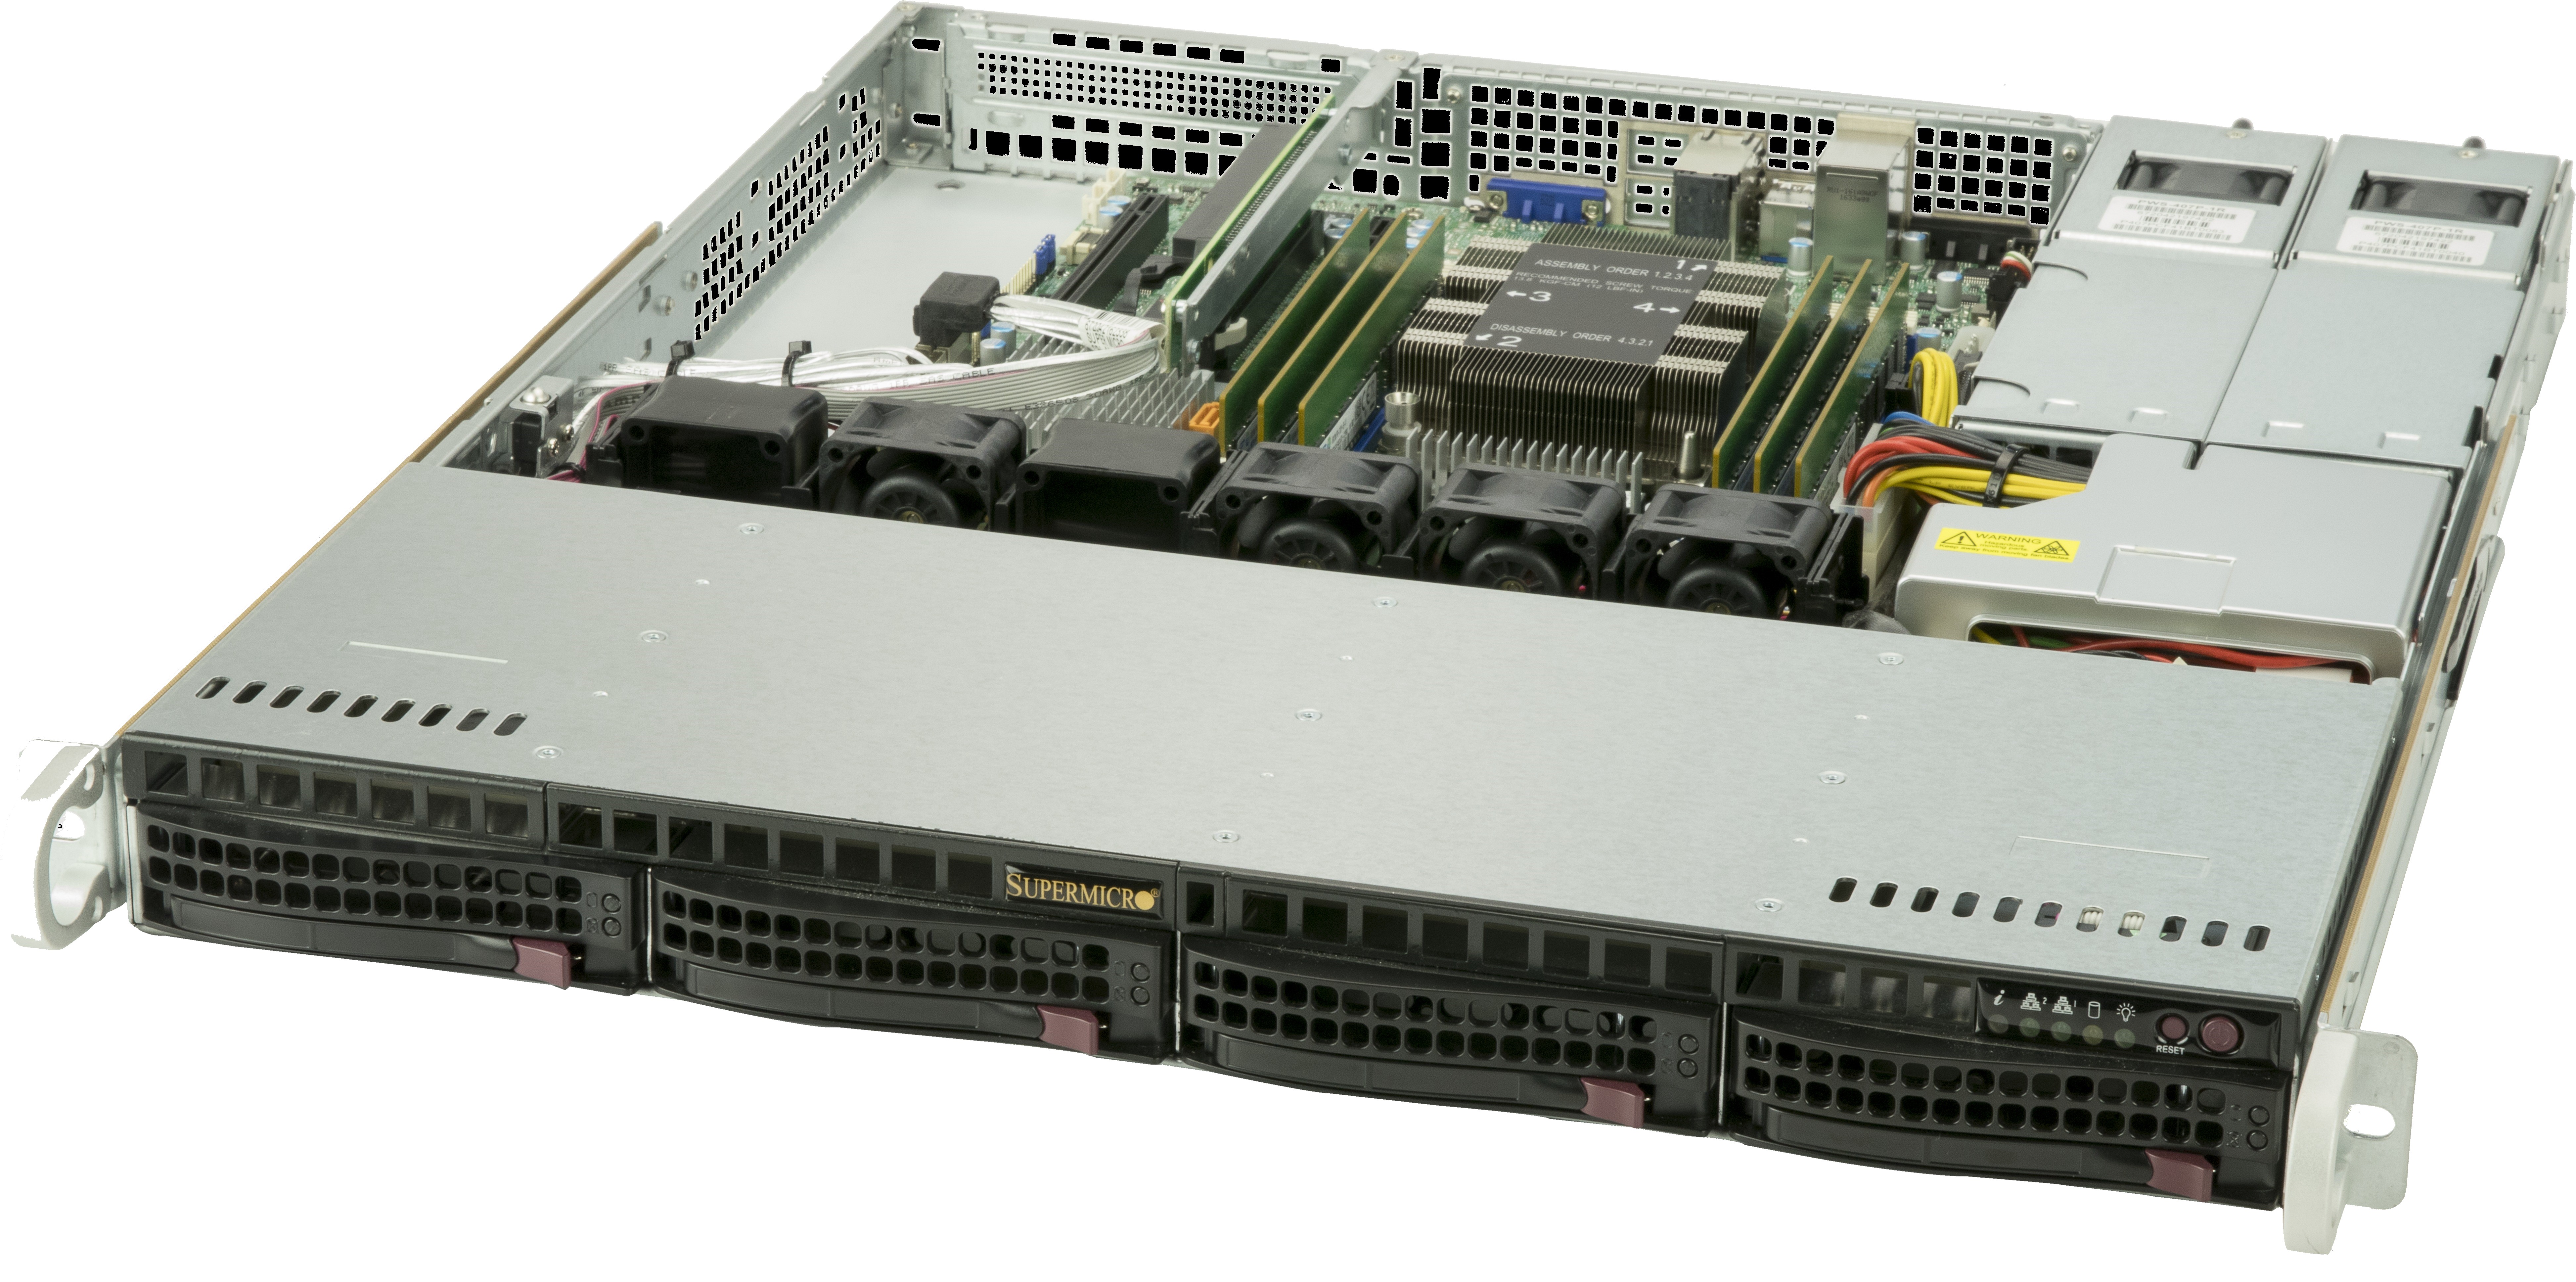 Supermicro 5019P-MR 1U Server